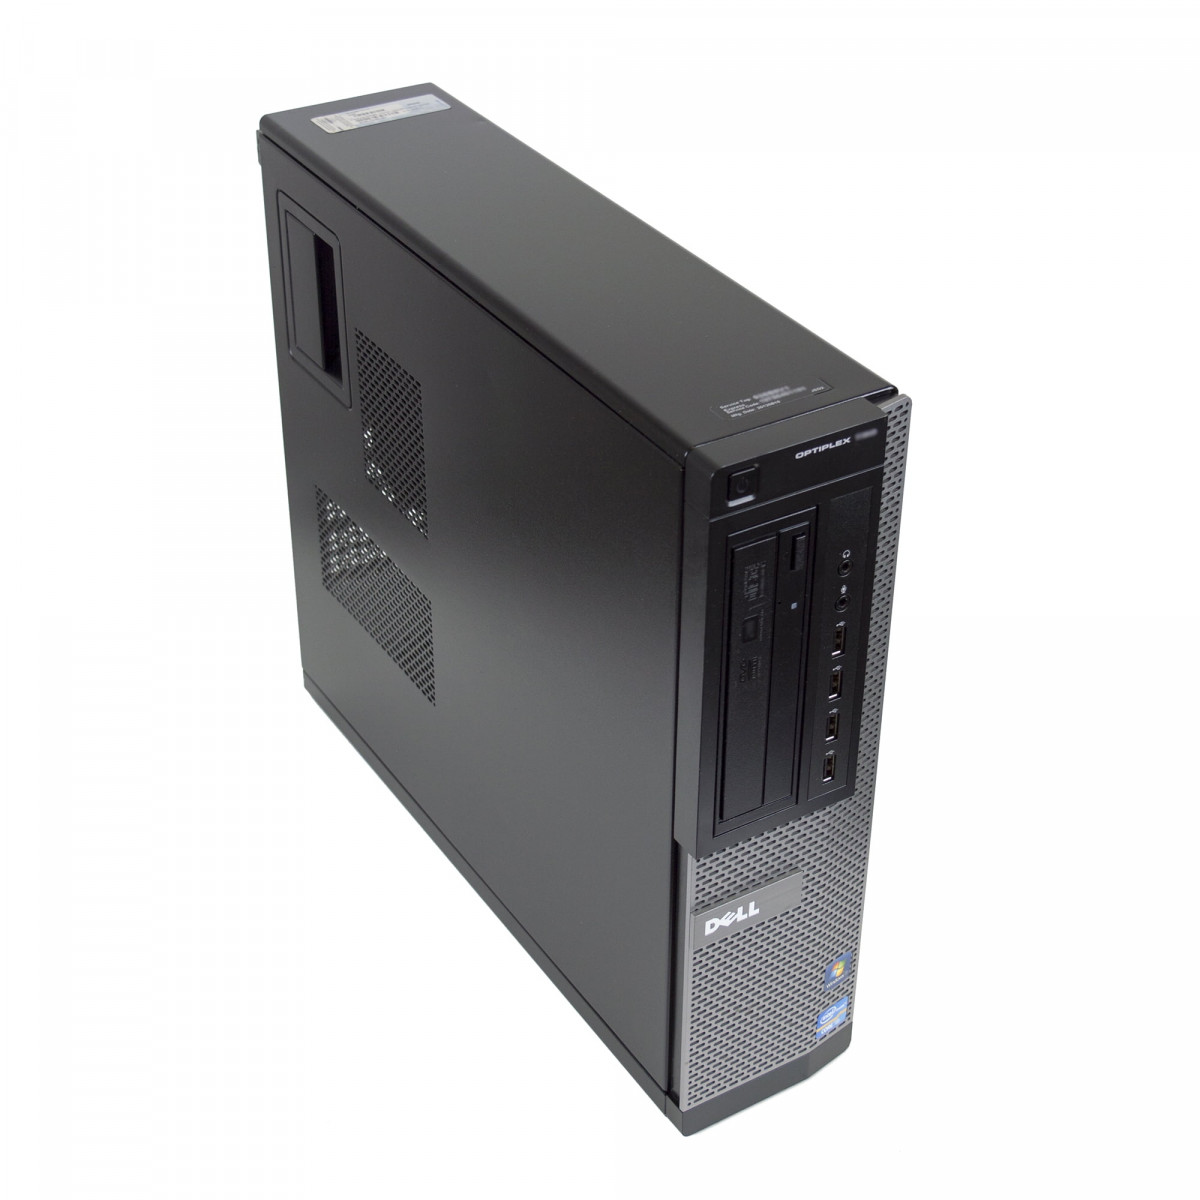 7010 DT i3-3220 16GB 256GB SSD Windows 10 Professional Stacionarus kompiuteris